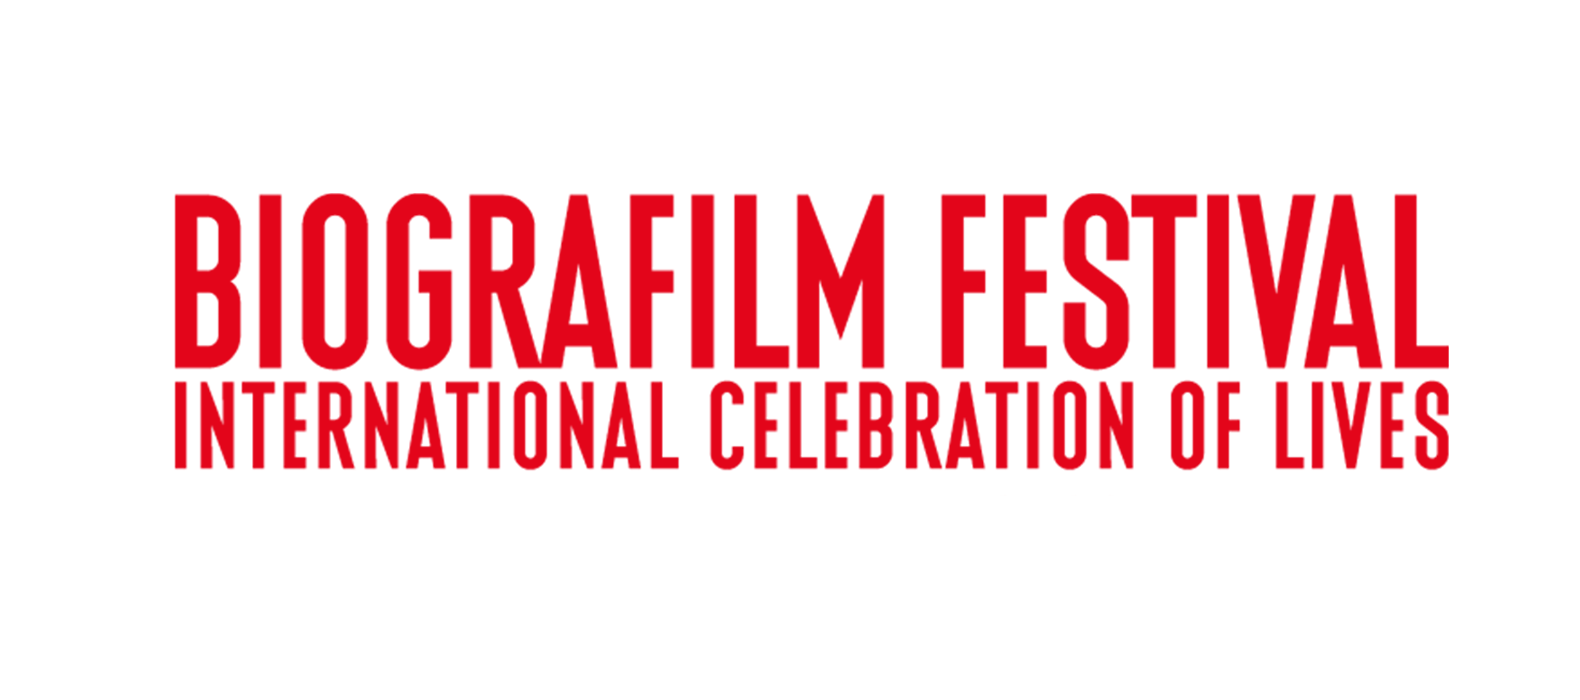 جشنواره فیلم بیوگرافی،جشن بین المللی زندگی ها 